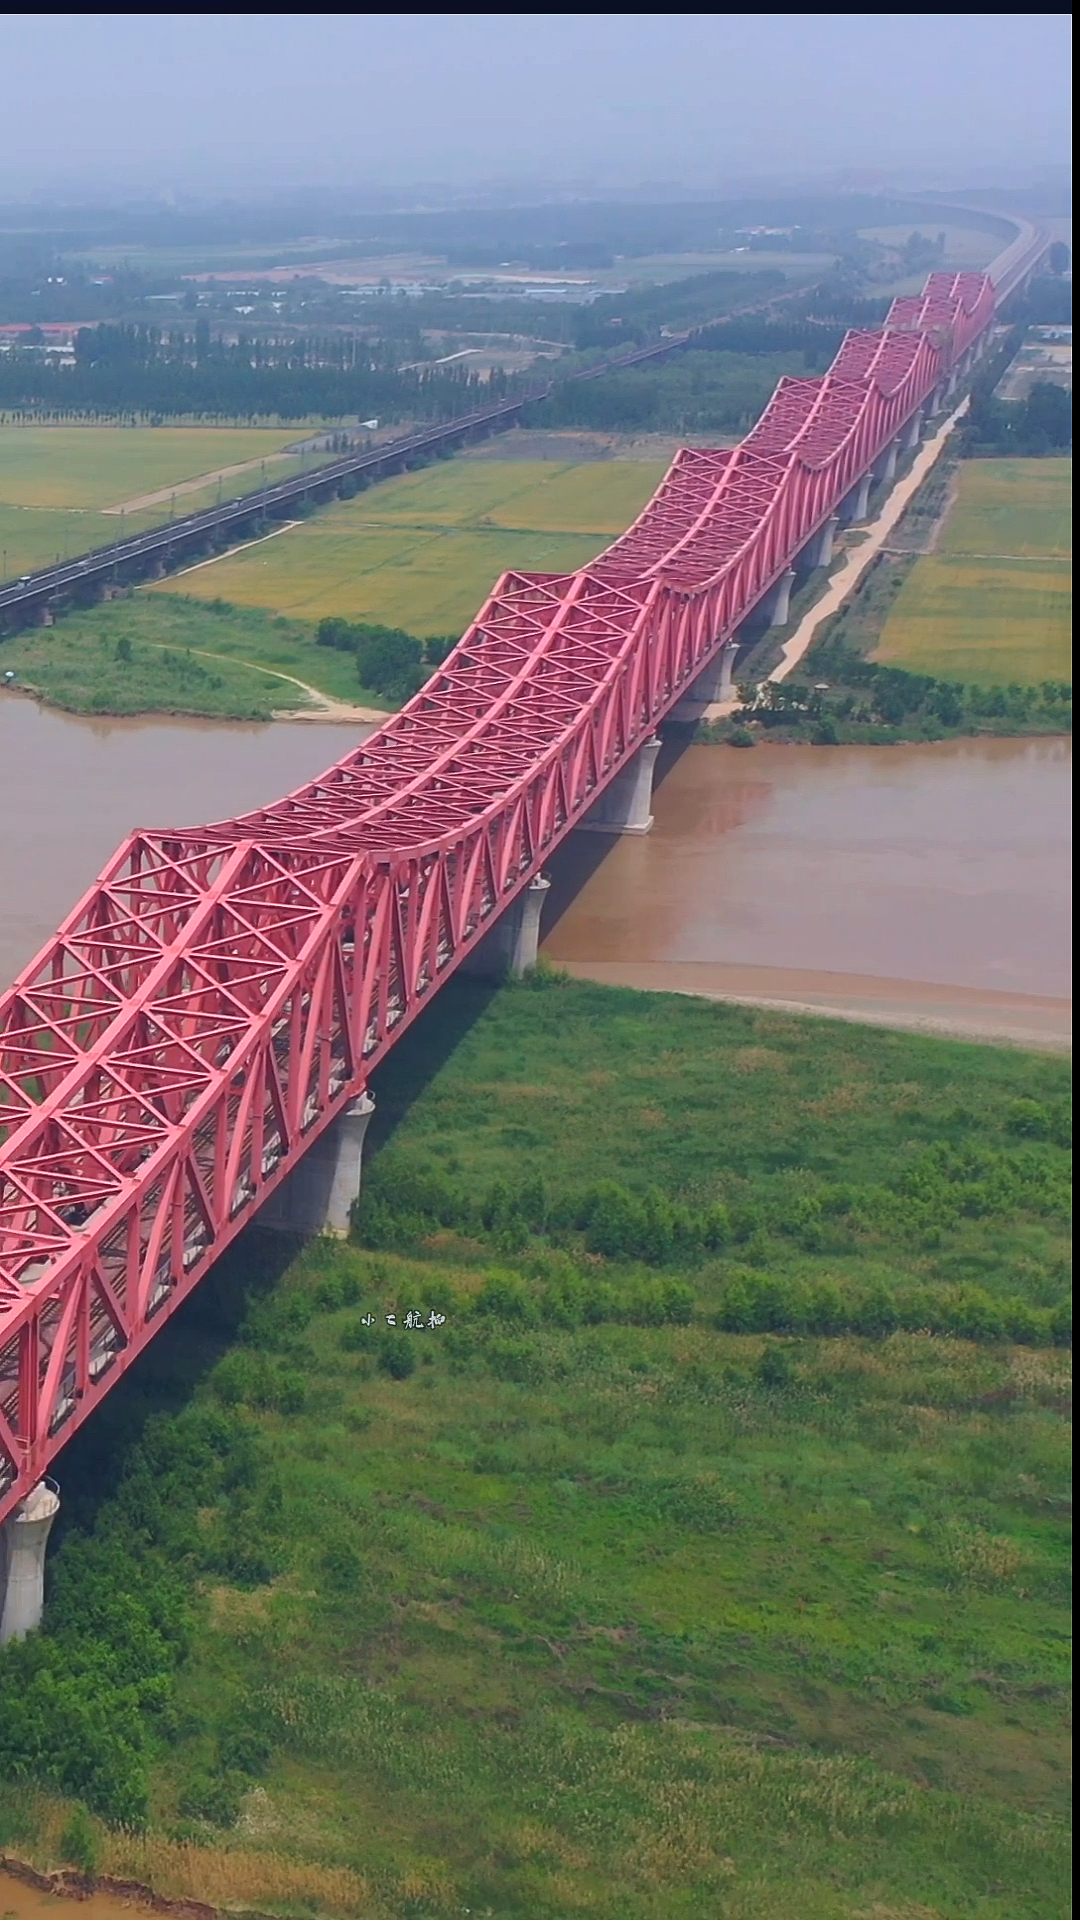 黄河铁路大桥,一千米三座大桥横跨黄河两岸,新京广跌路2014换桥通车